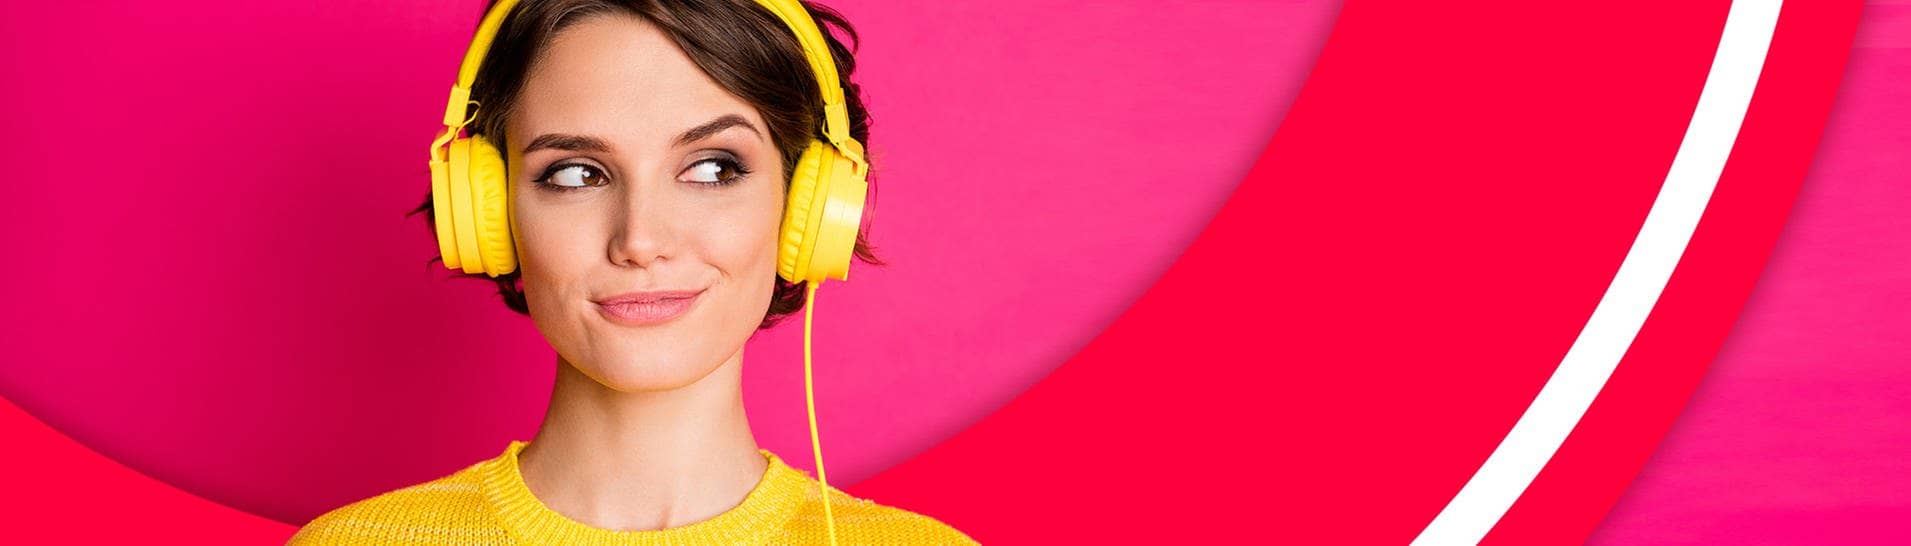 Frau hört Audioreihen und Podcast auf dem Kopfhörer (Foto: Adobe Stock/deagreez)